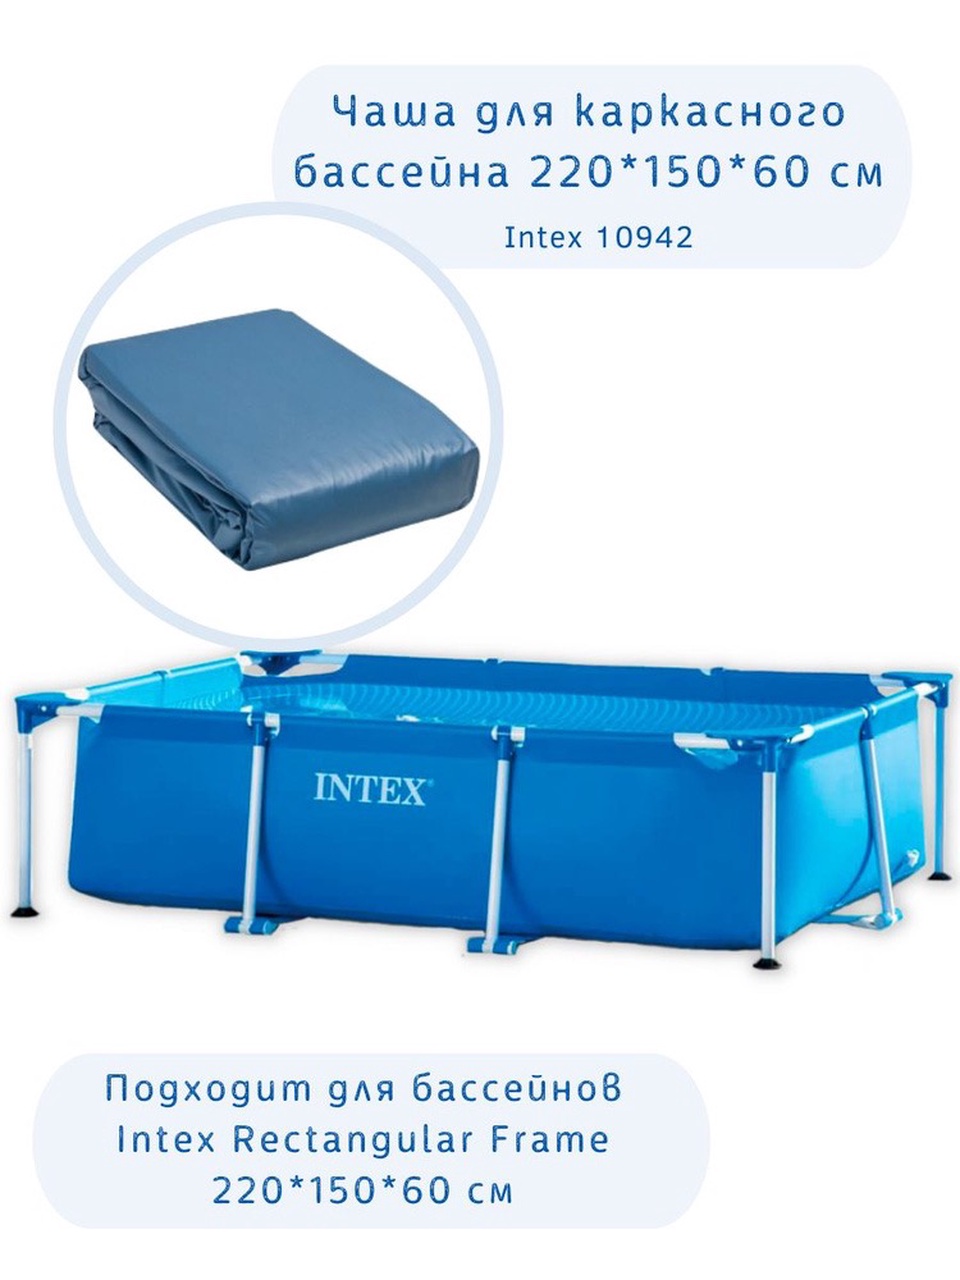 Чаша для каркасного бассейна 220*150*60 см Intex 10942 - 4 900 ₽, заказать онлайн.